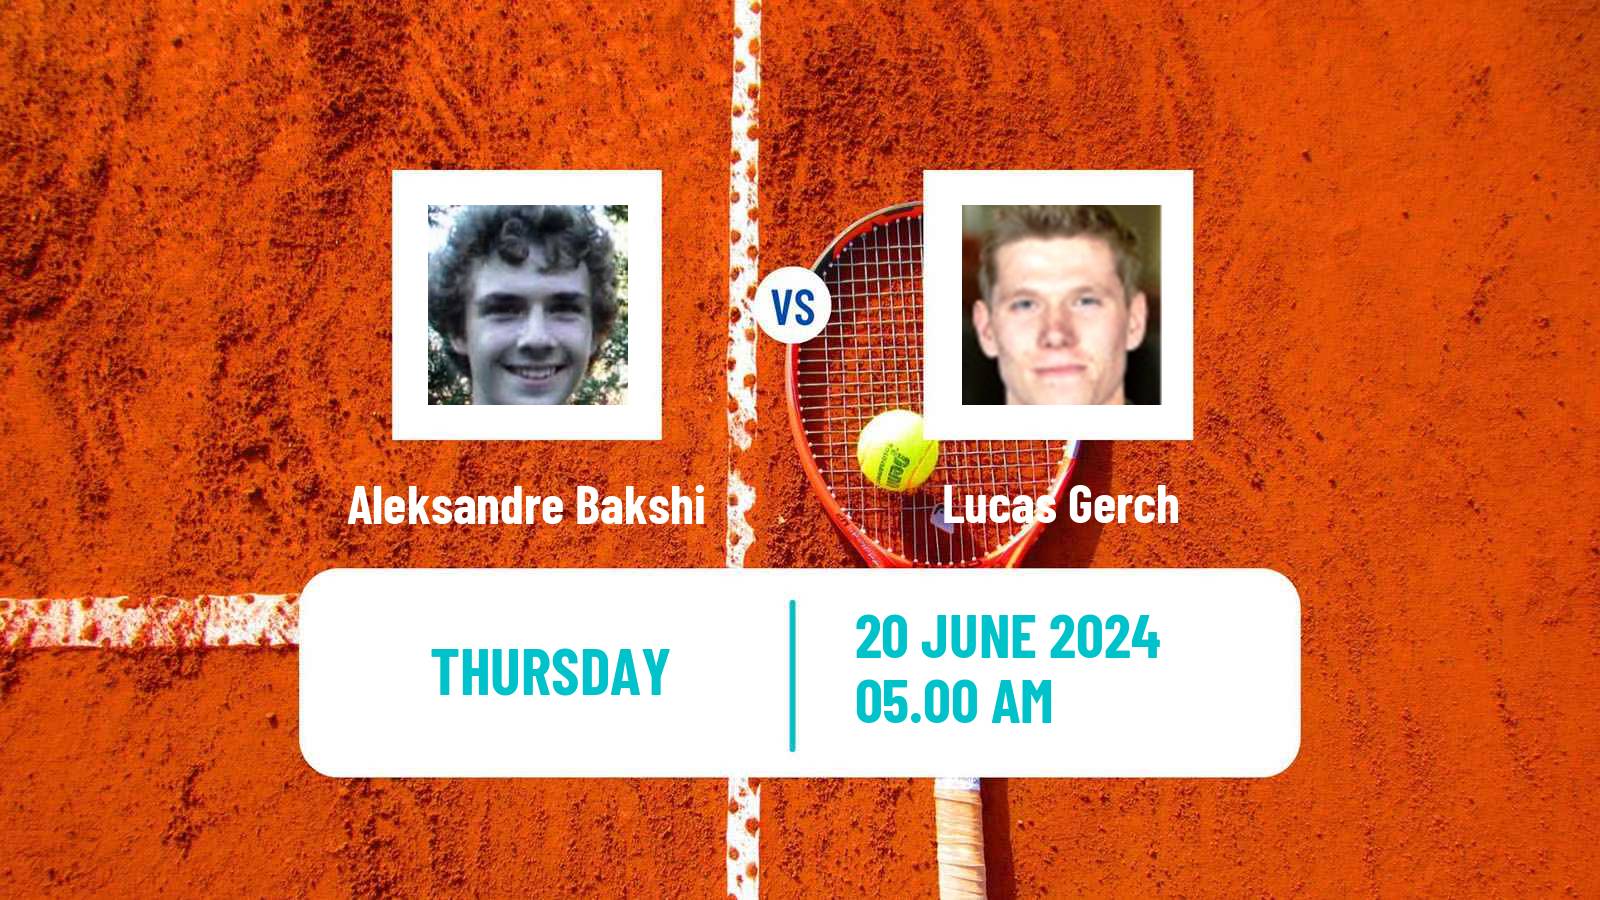 Tennis ITF M15 Saarlouis Men Aleksandre Bakshi - Lucas Gerch